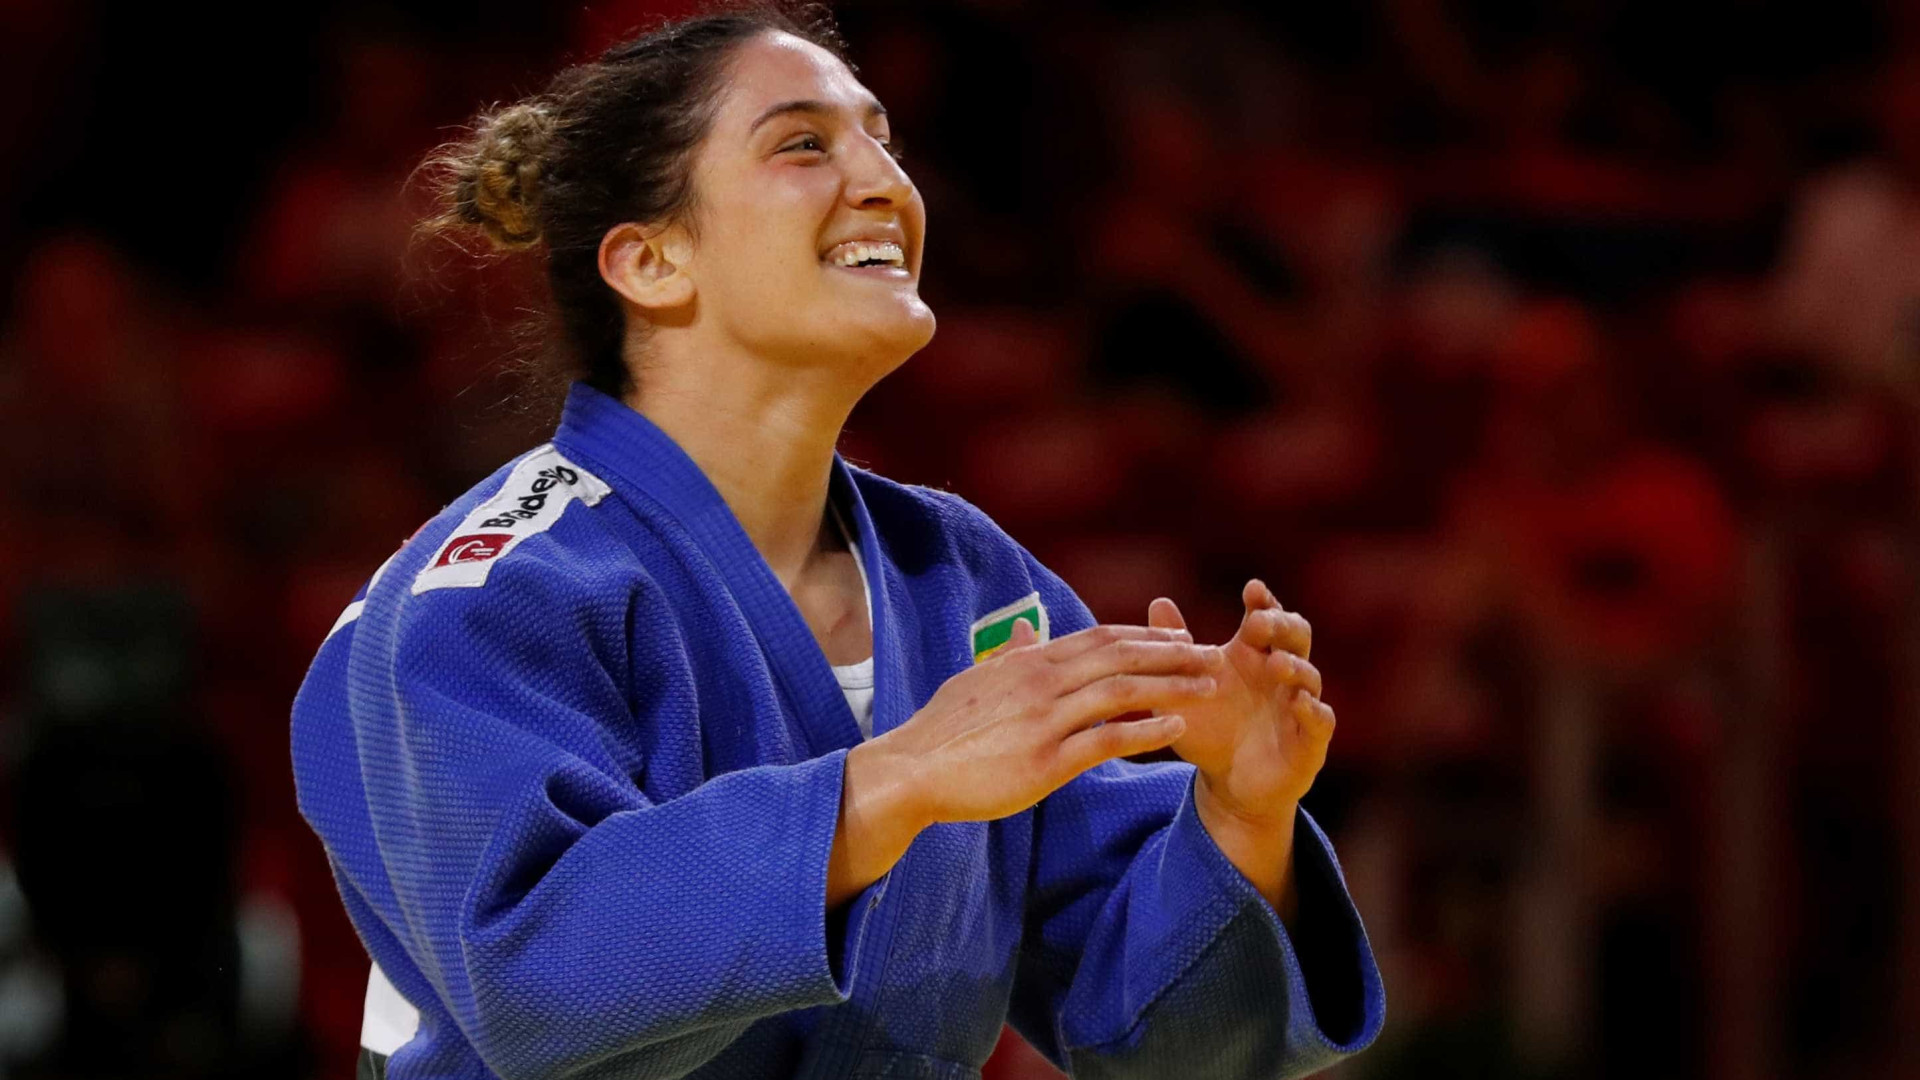 Com volta de Mayra Aguiar, seleção de judô é convocada para Mundial